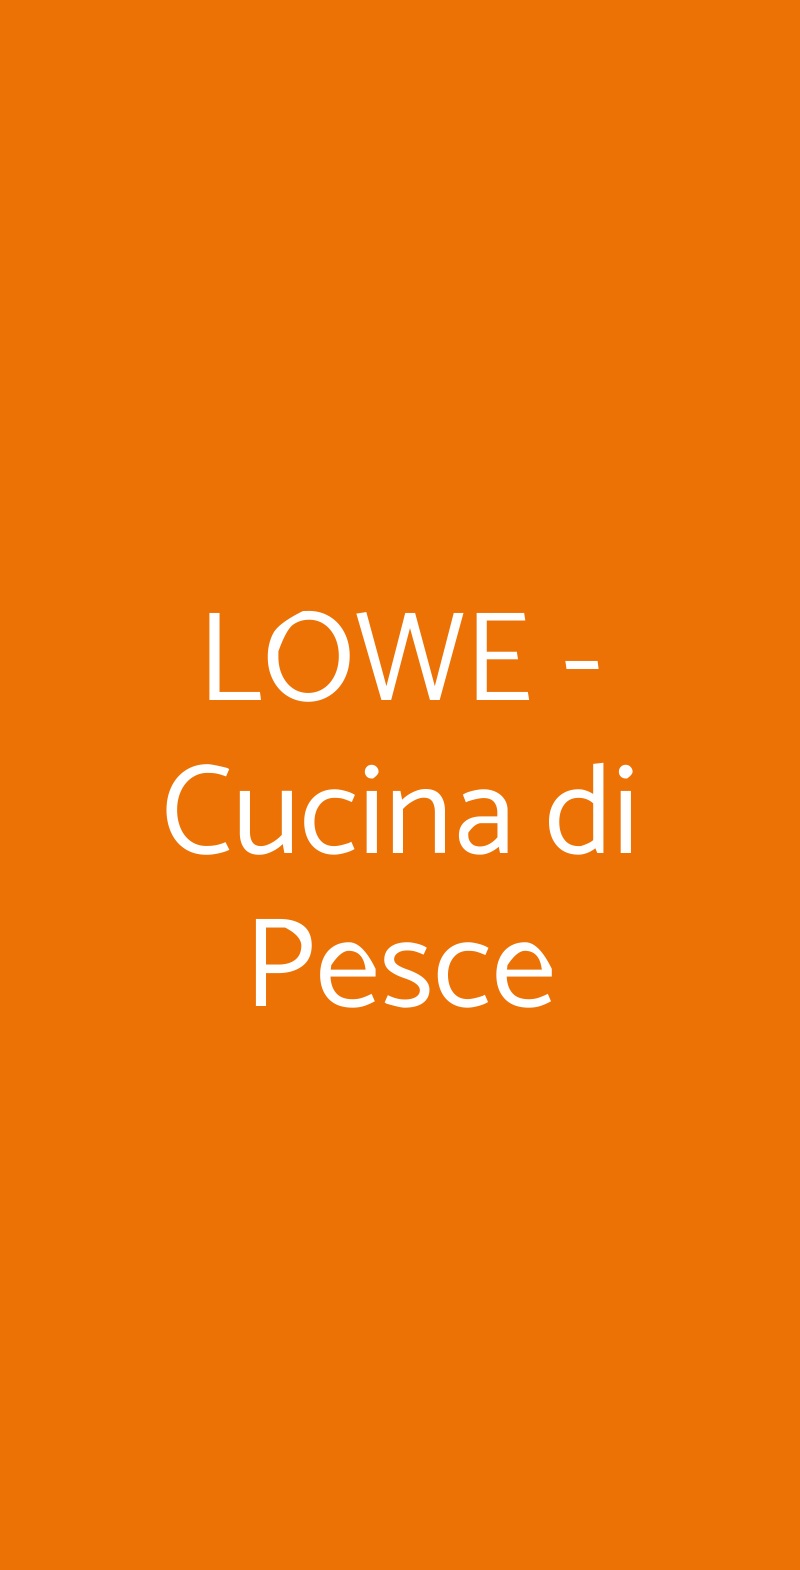 Lowe Cucina di Pesce Faenza menù 1 pagina